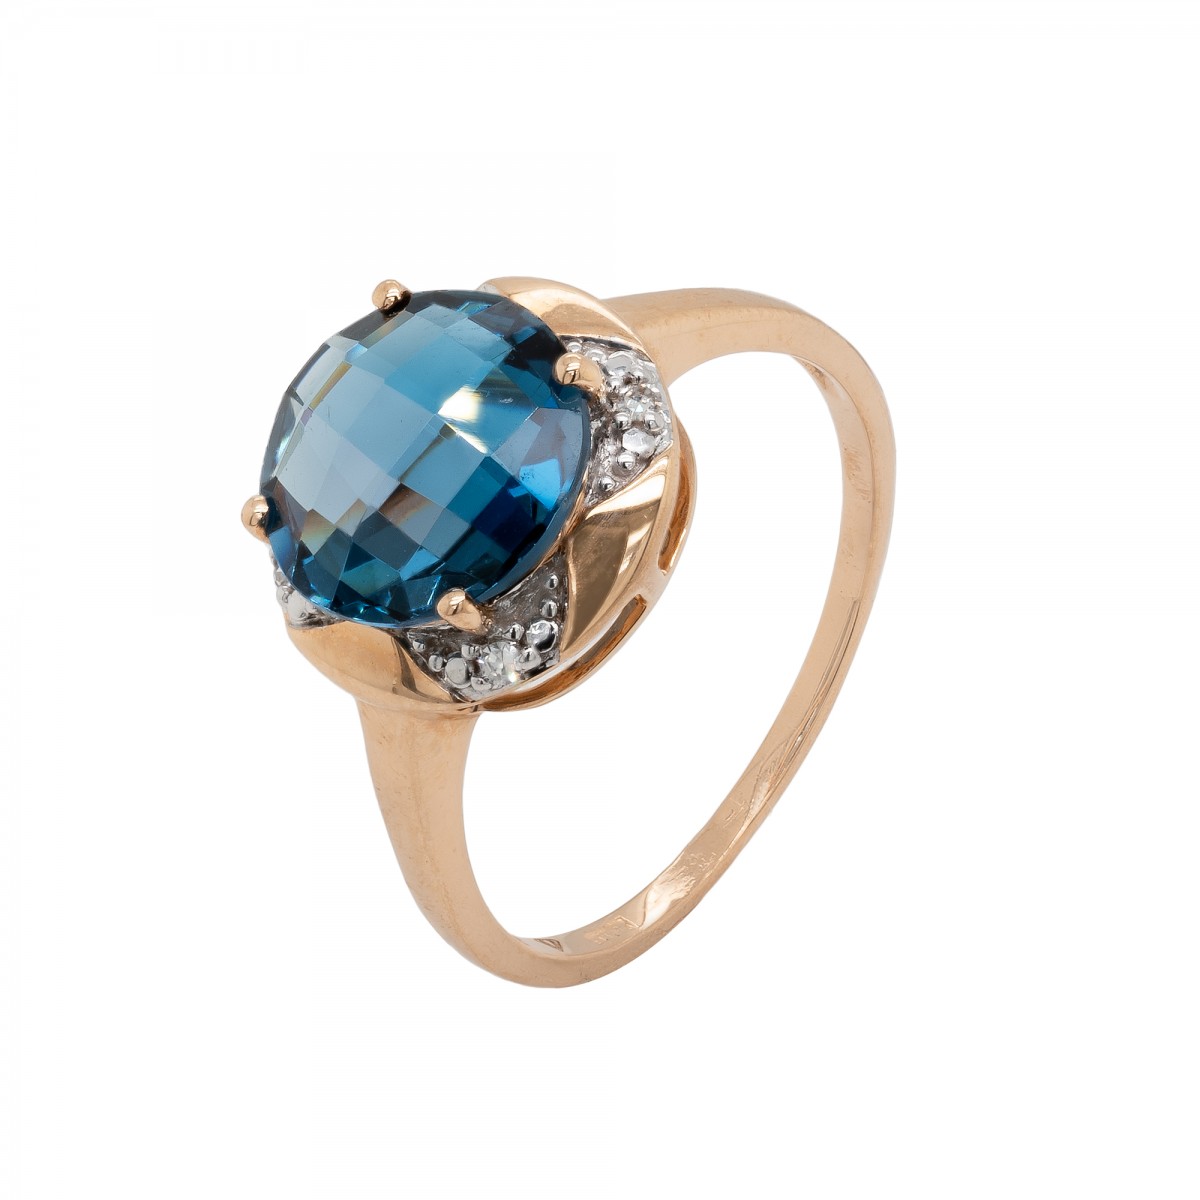 Ekskliuzyvinis auksinis žiedas su deimantais ir mėlynuoju Londono topazu